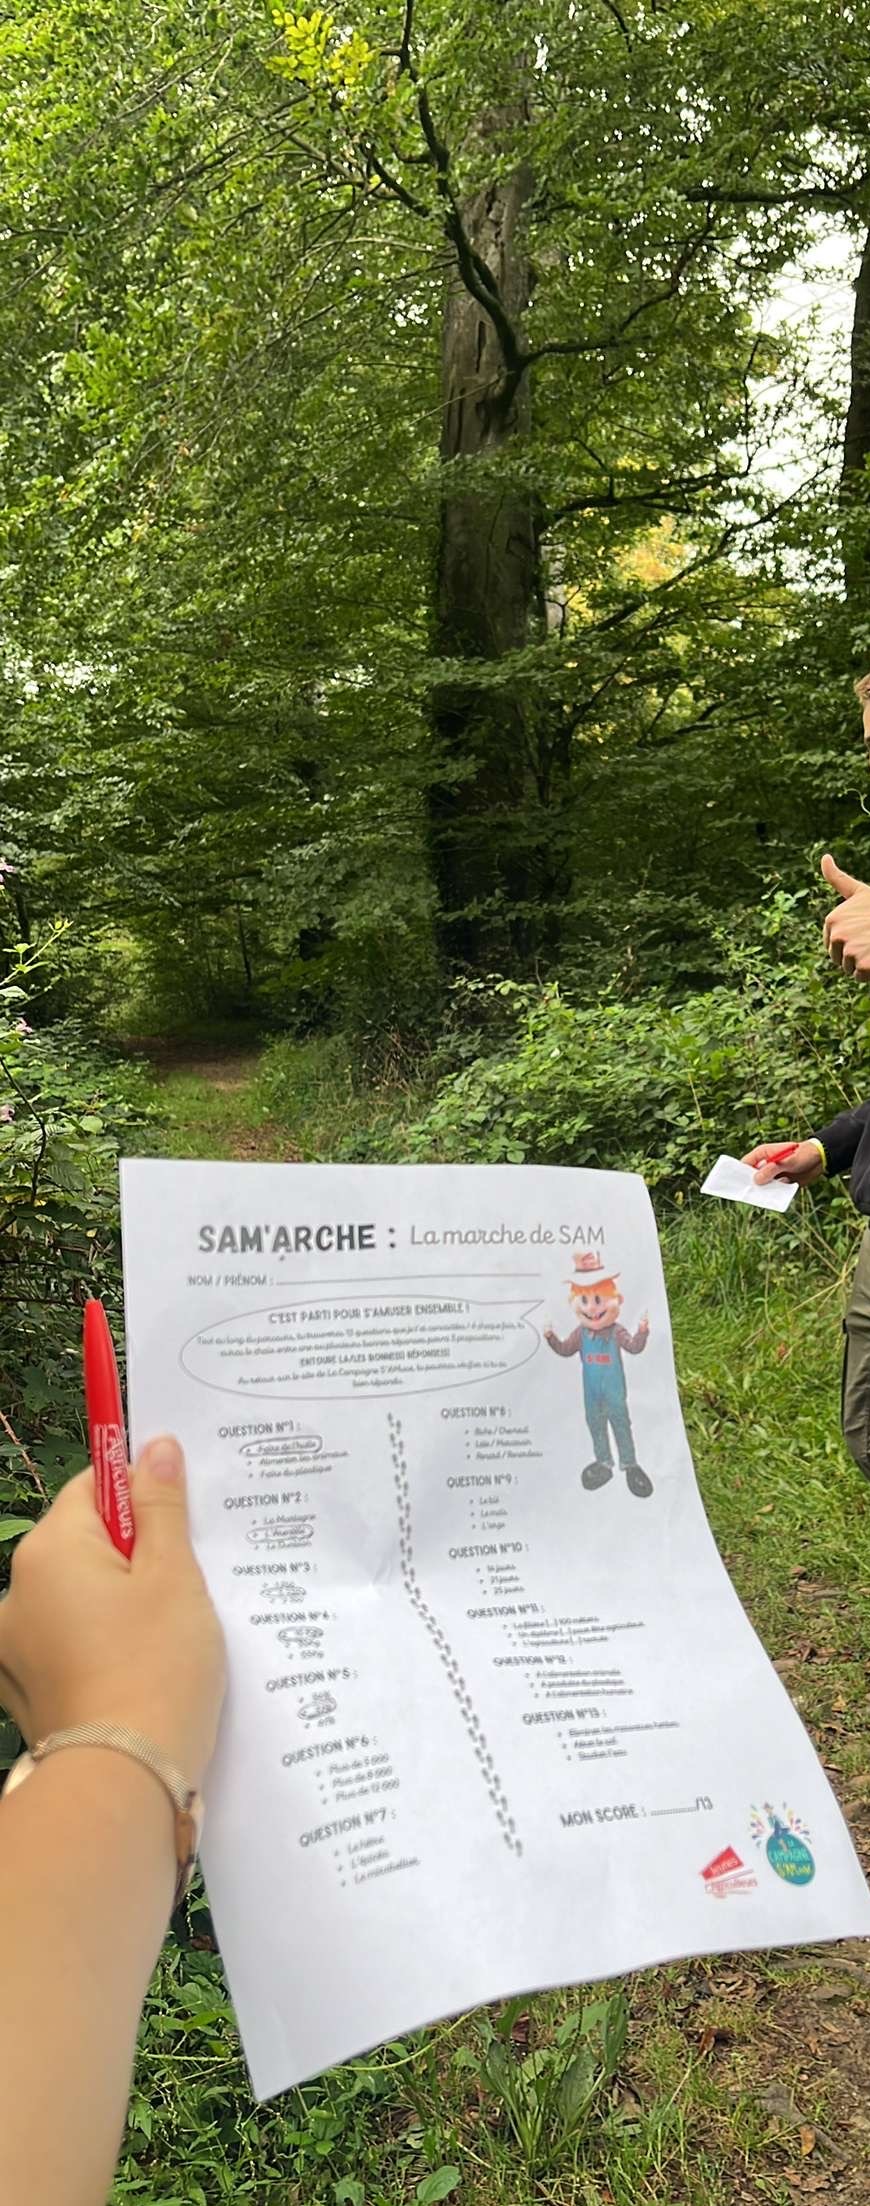 SAM’arche, avec son questionnaire ludique à remplir tout au long du parcours ©JA88